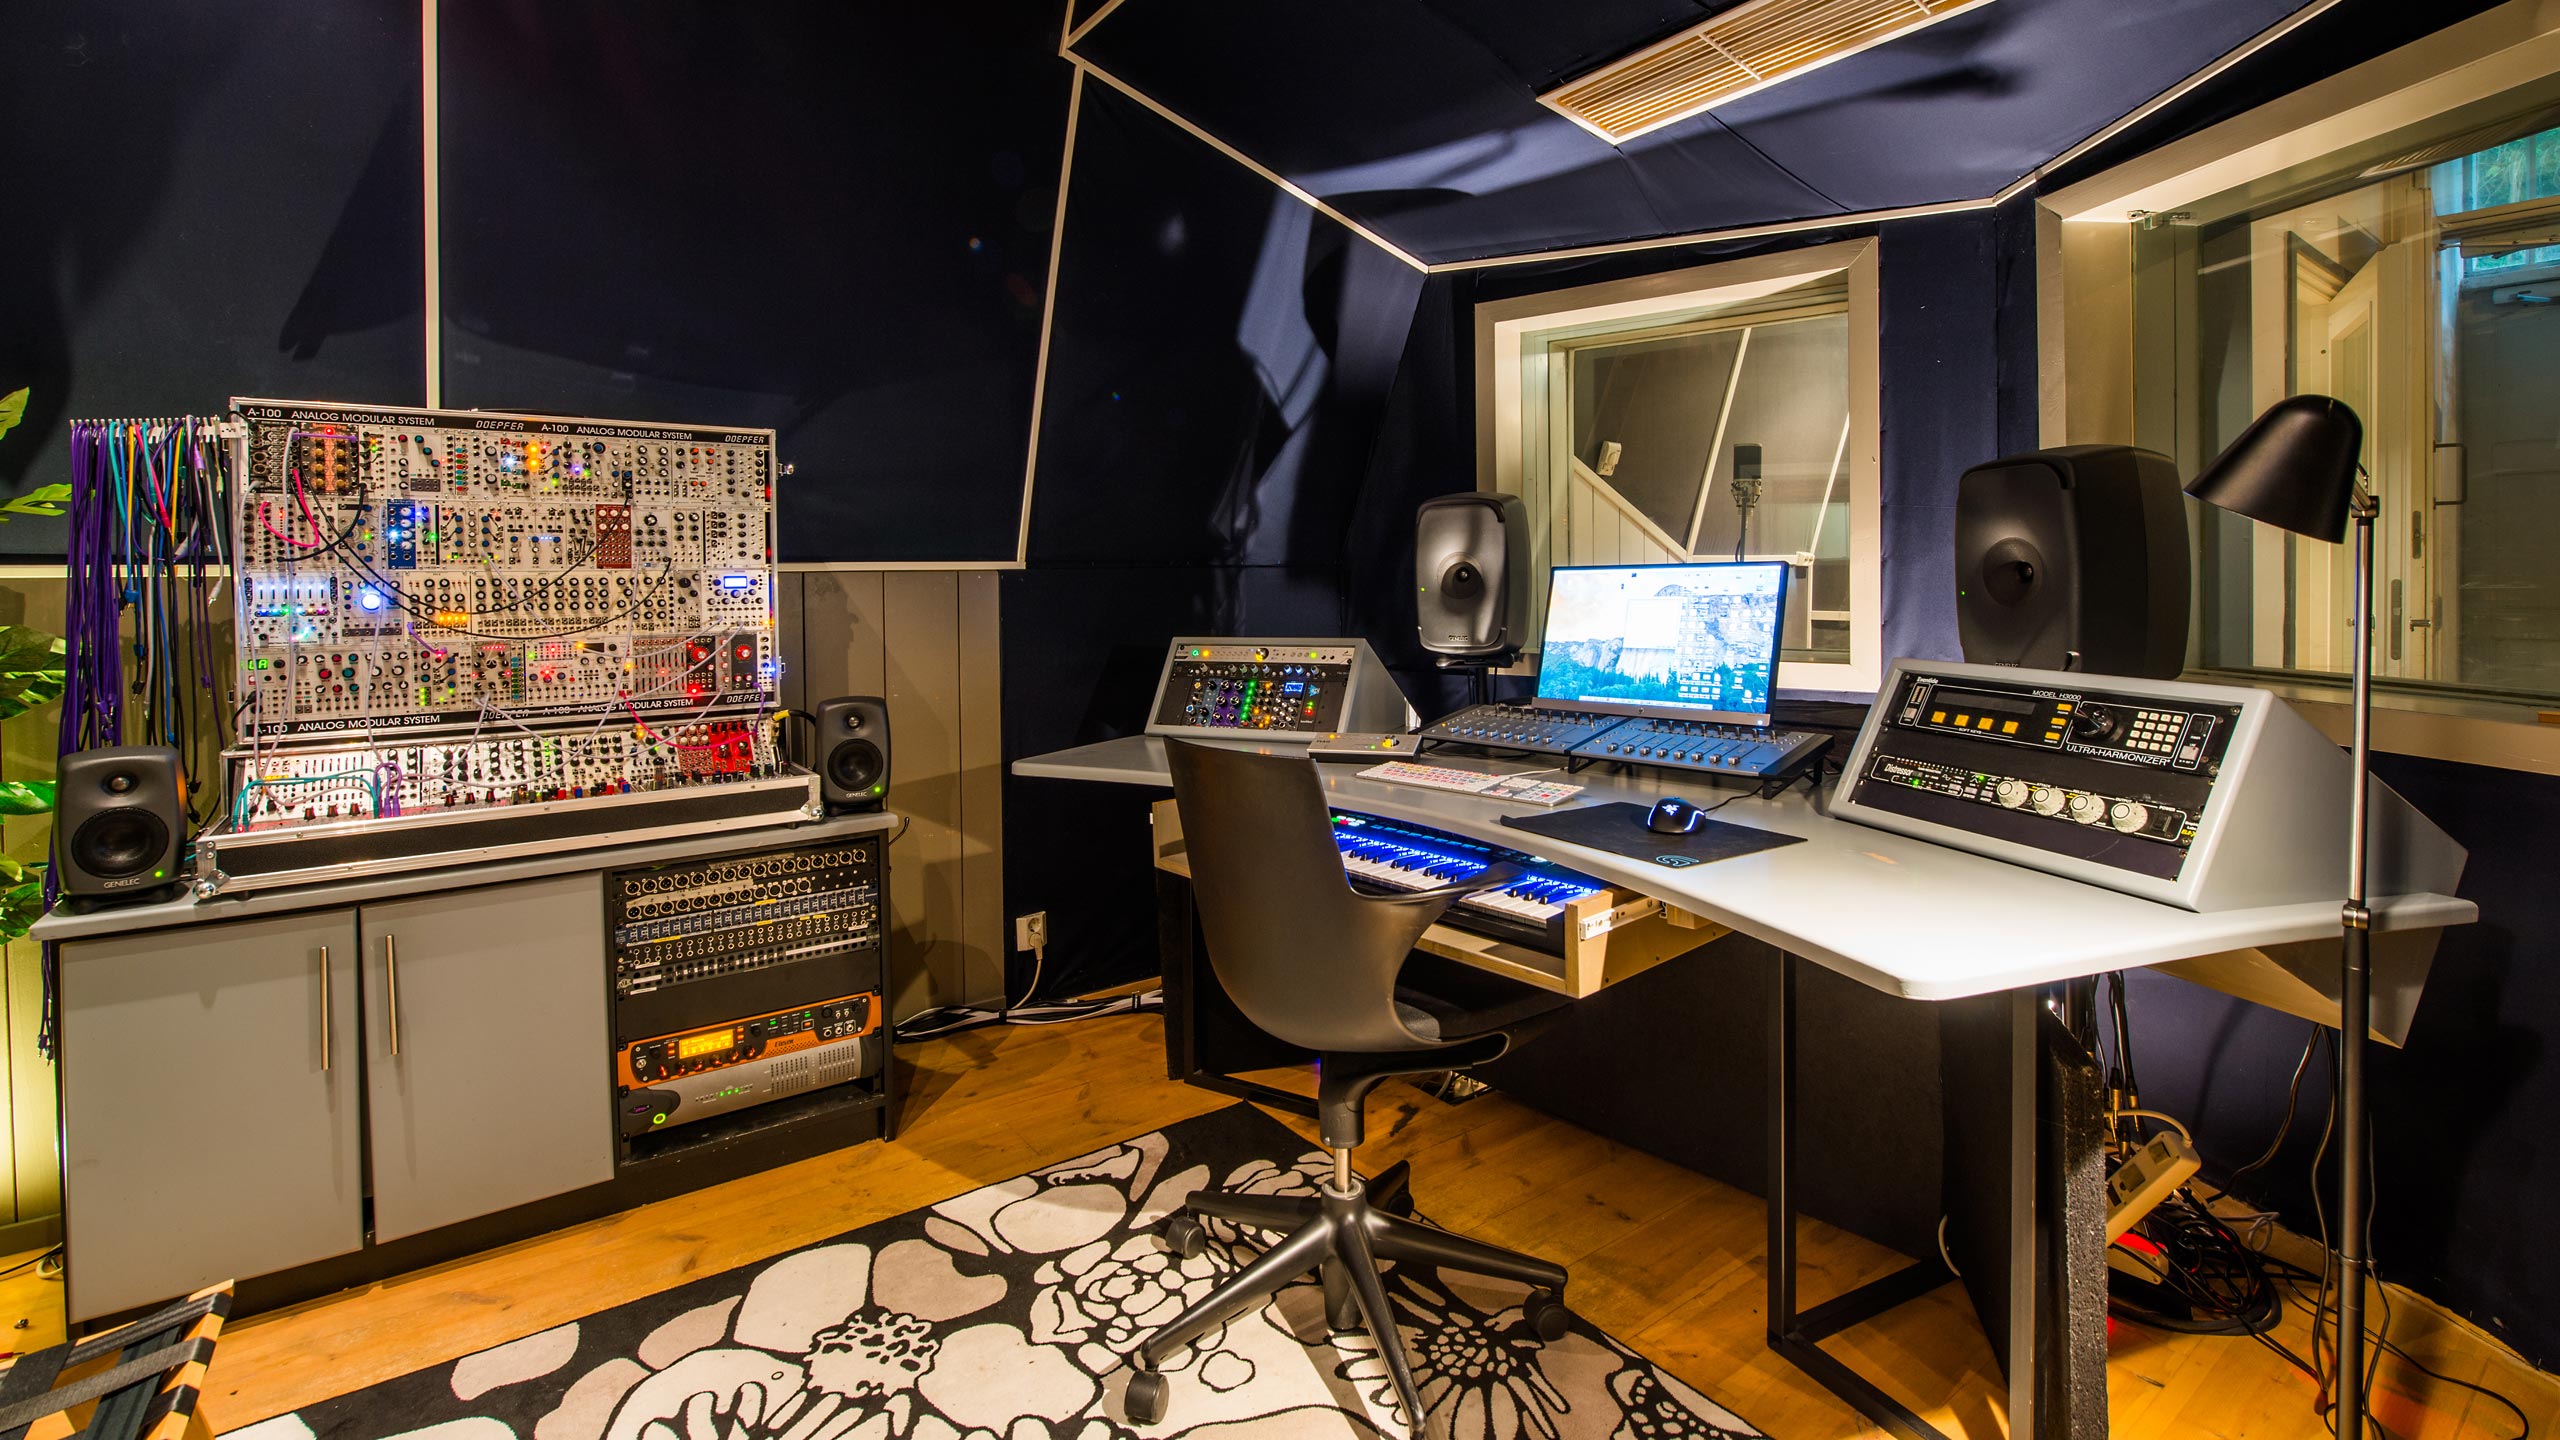 Suomenlinnan Studio | Music studio and creative complex located in  Suomenlinna island, Helsinki – Finland